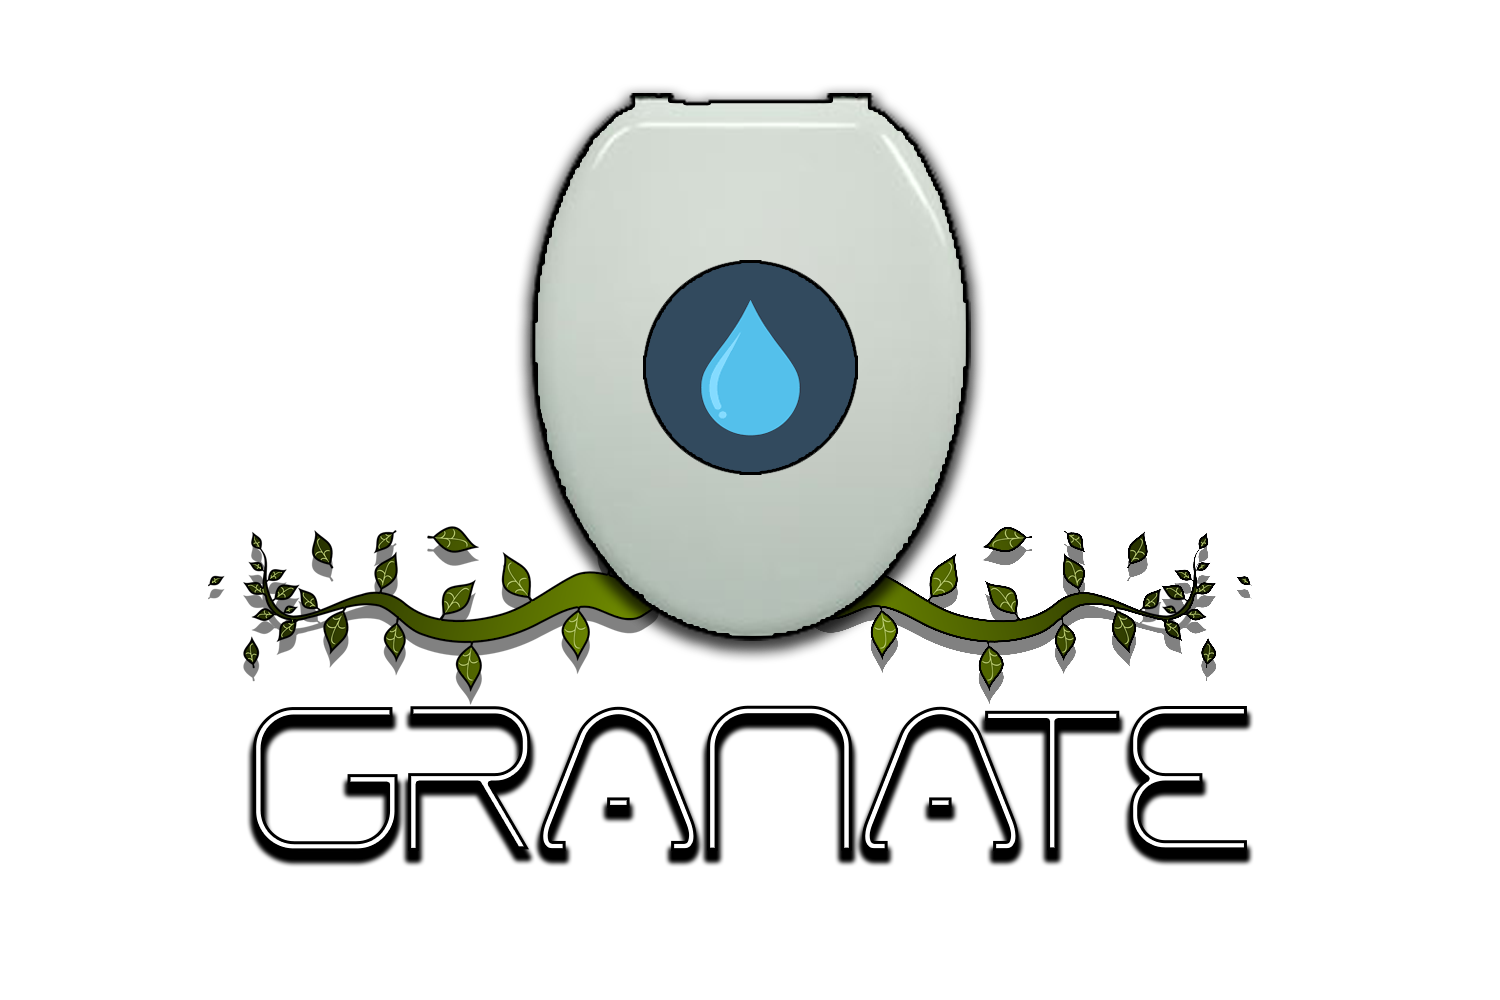 Granate S.A.S